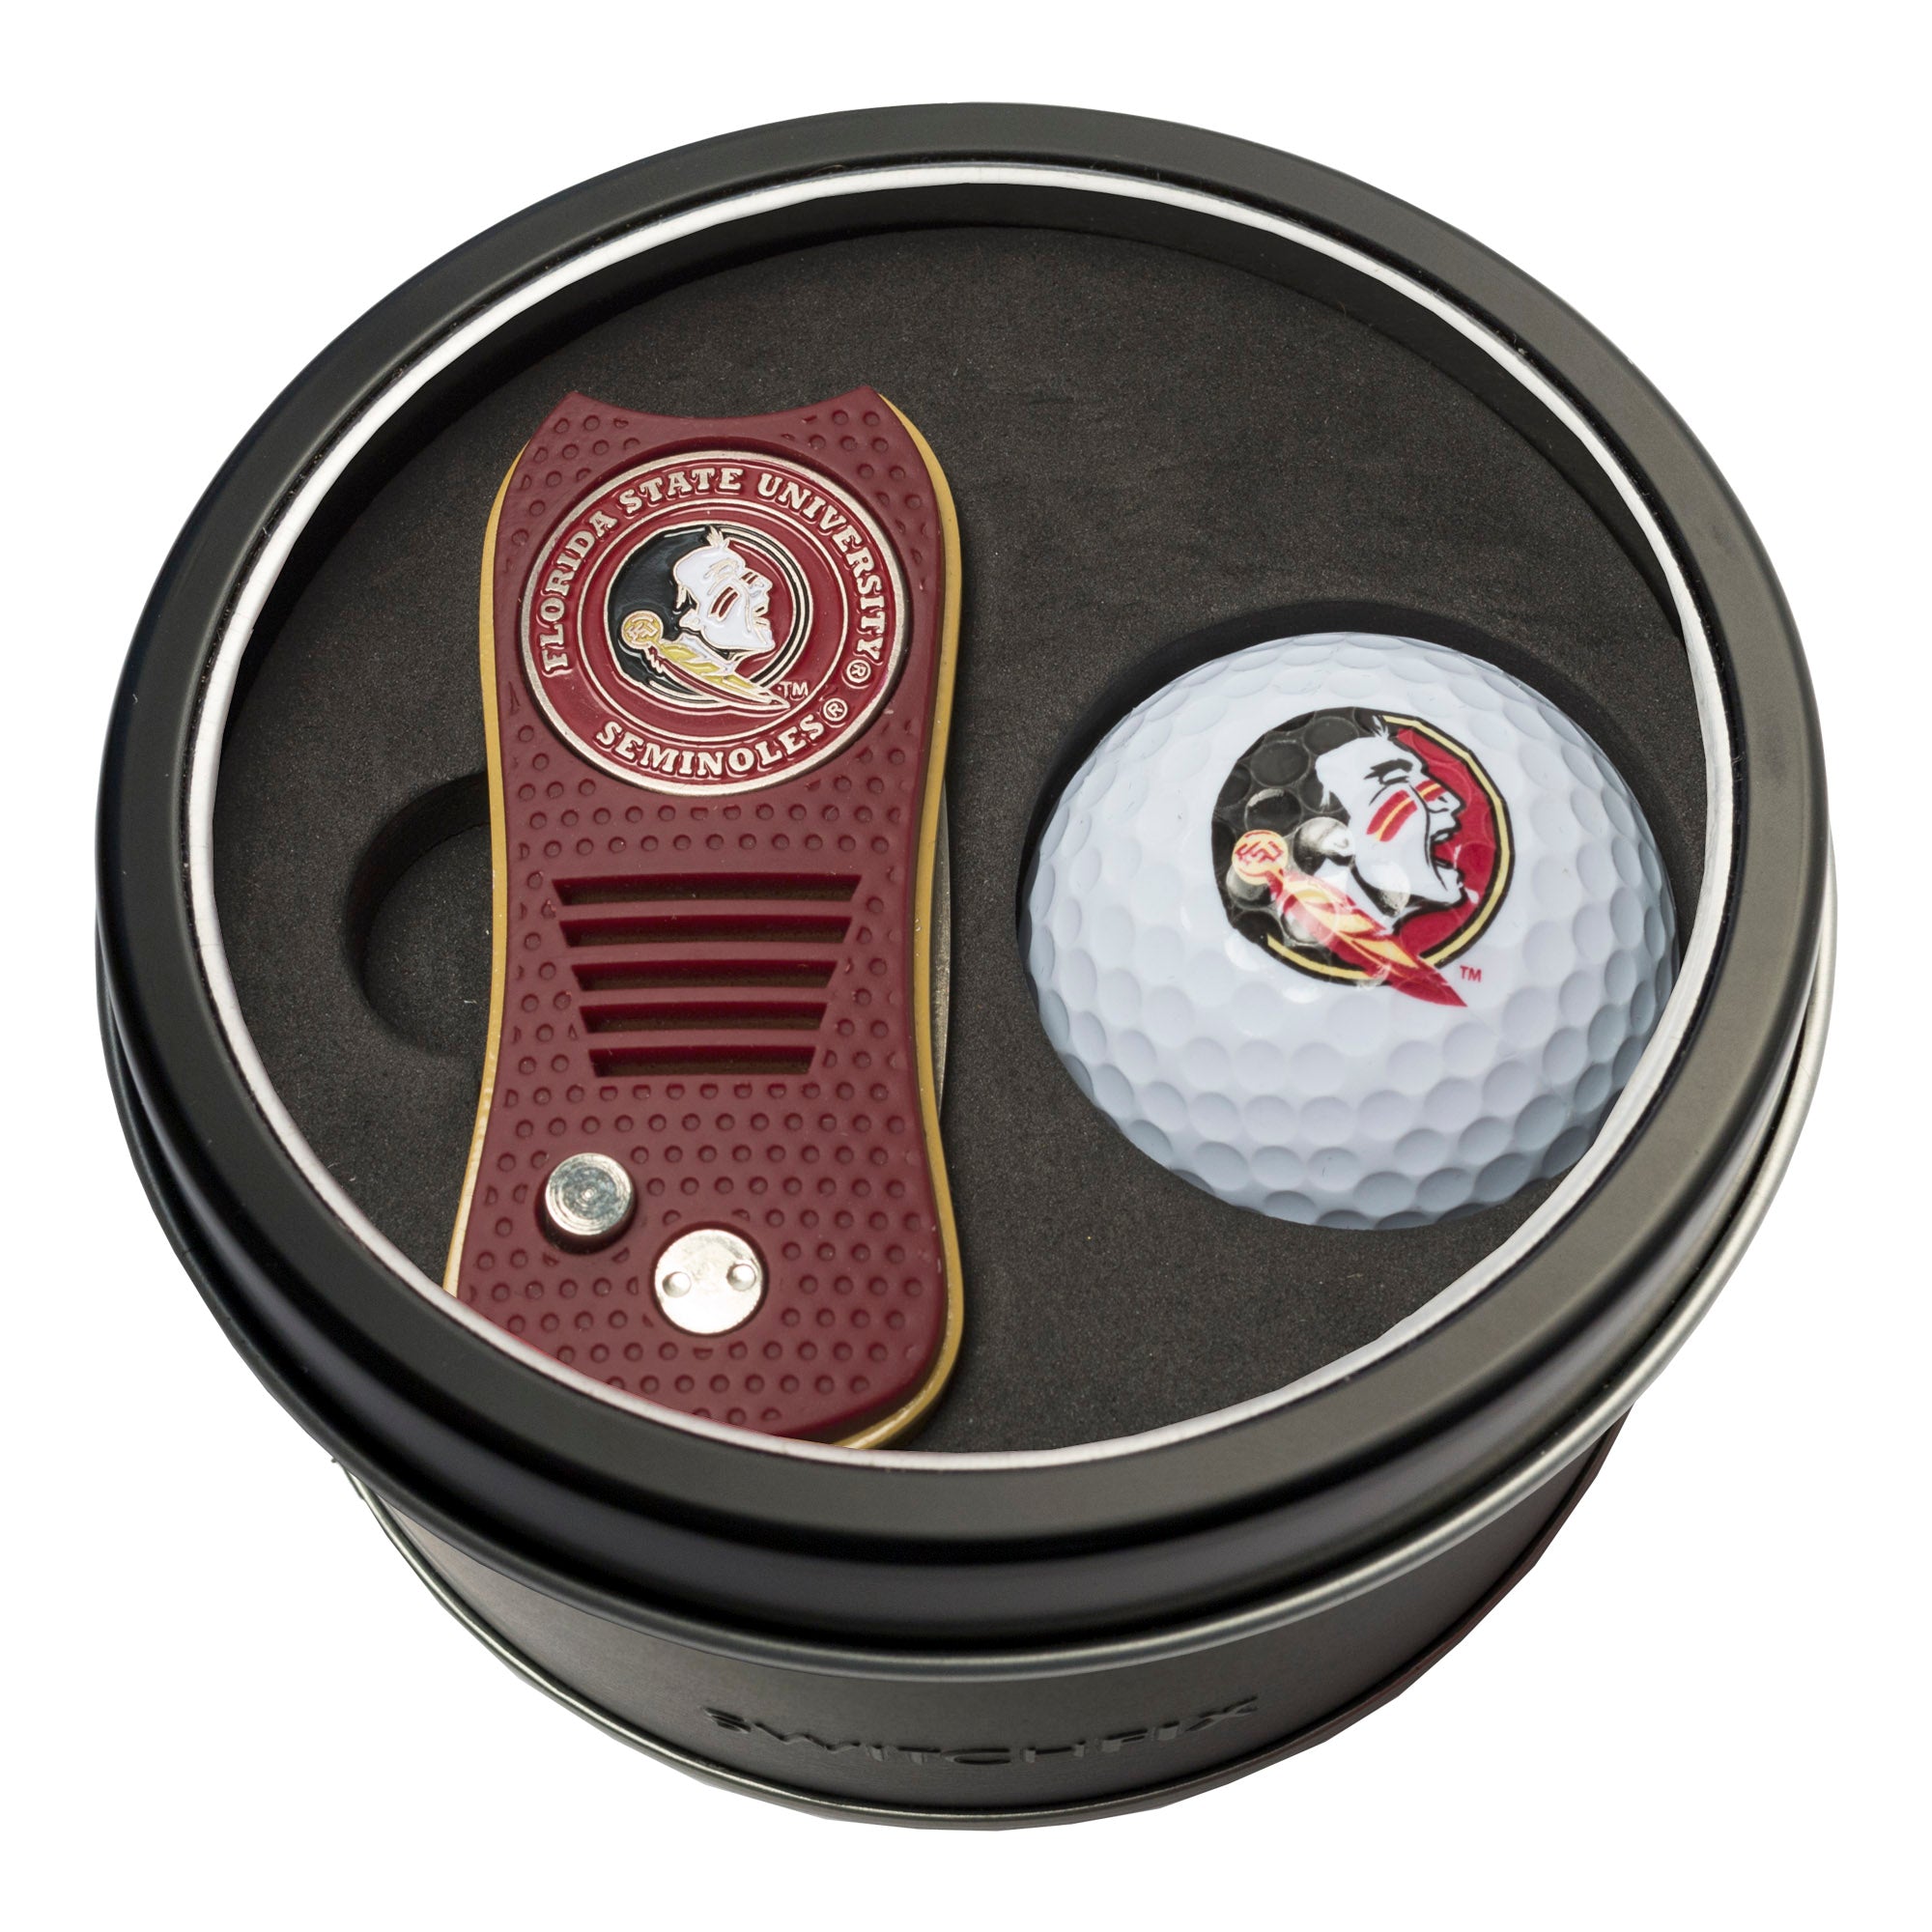 Florida State Seminoles Switchblade Divot Tool + Golf Ball Tin Gift Set